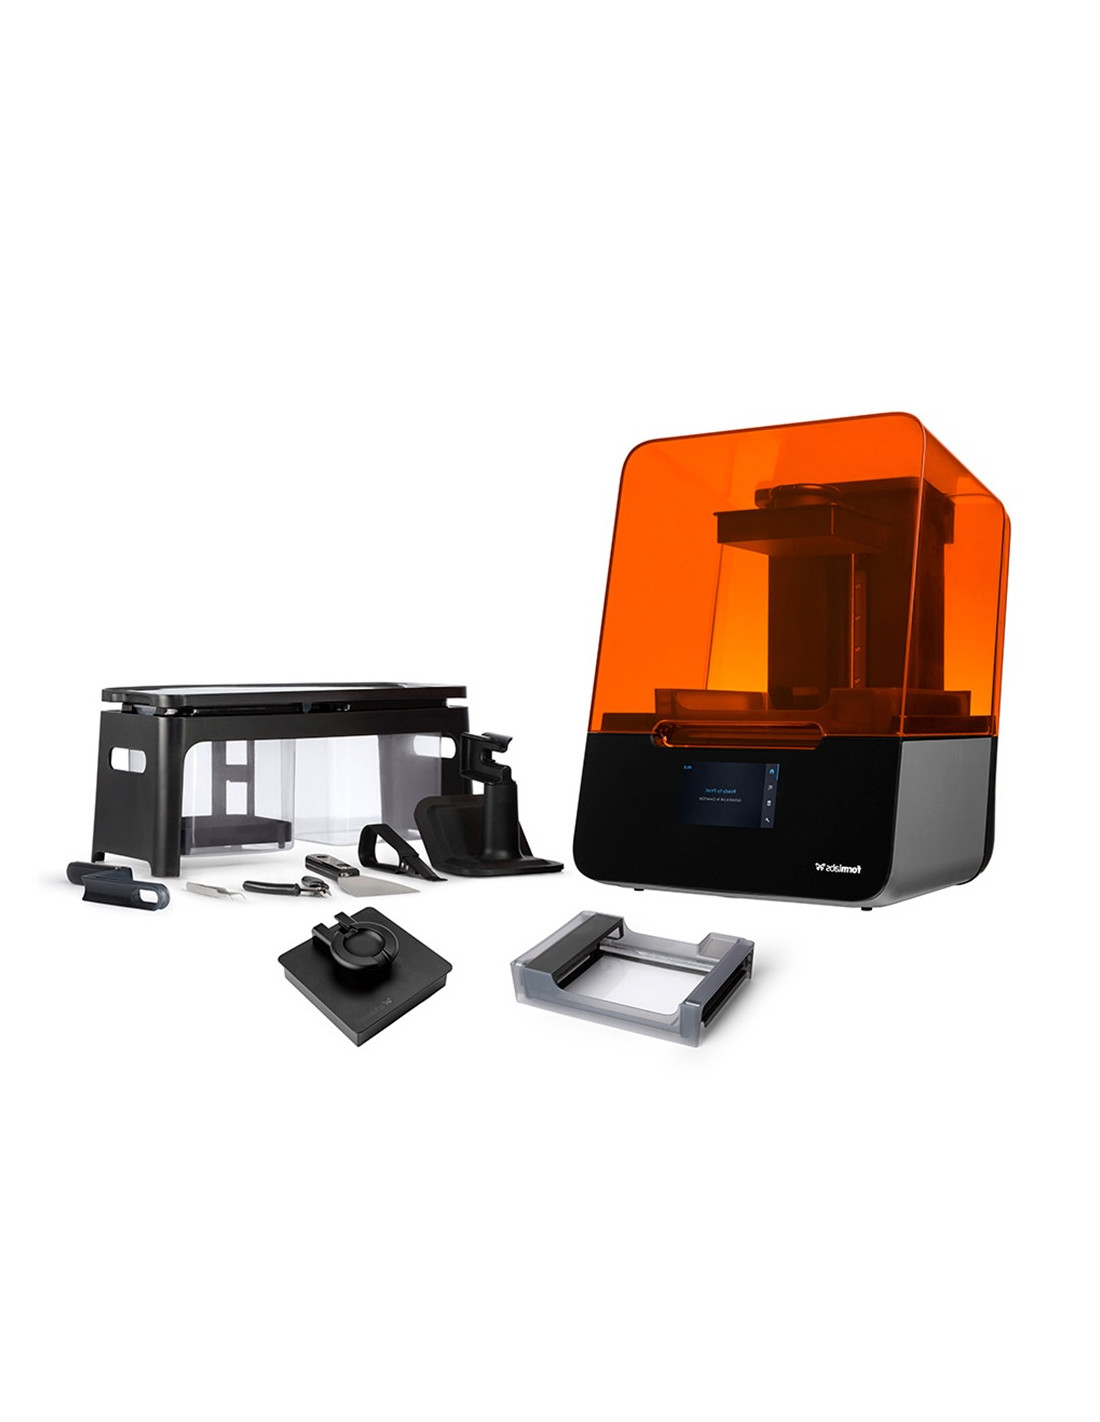 Impresora 3D FormLabs Form 3 - paquete básico